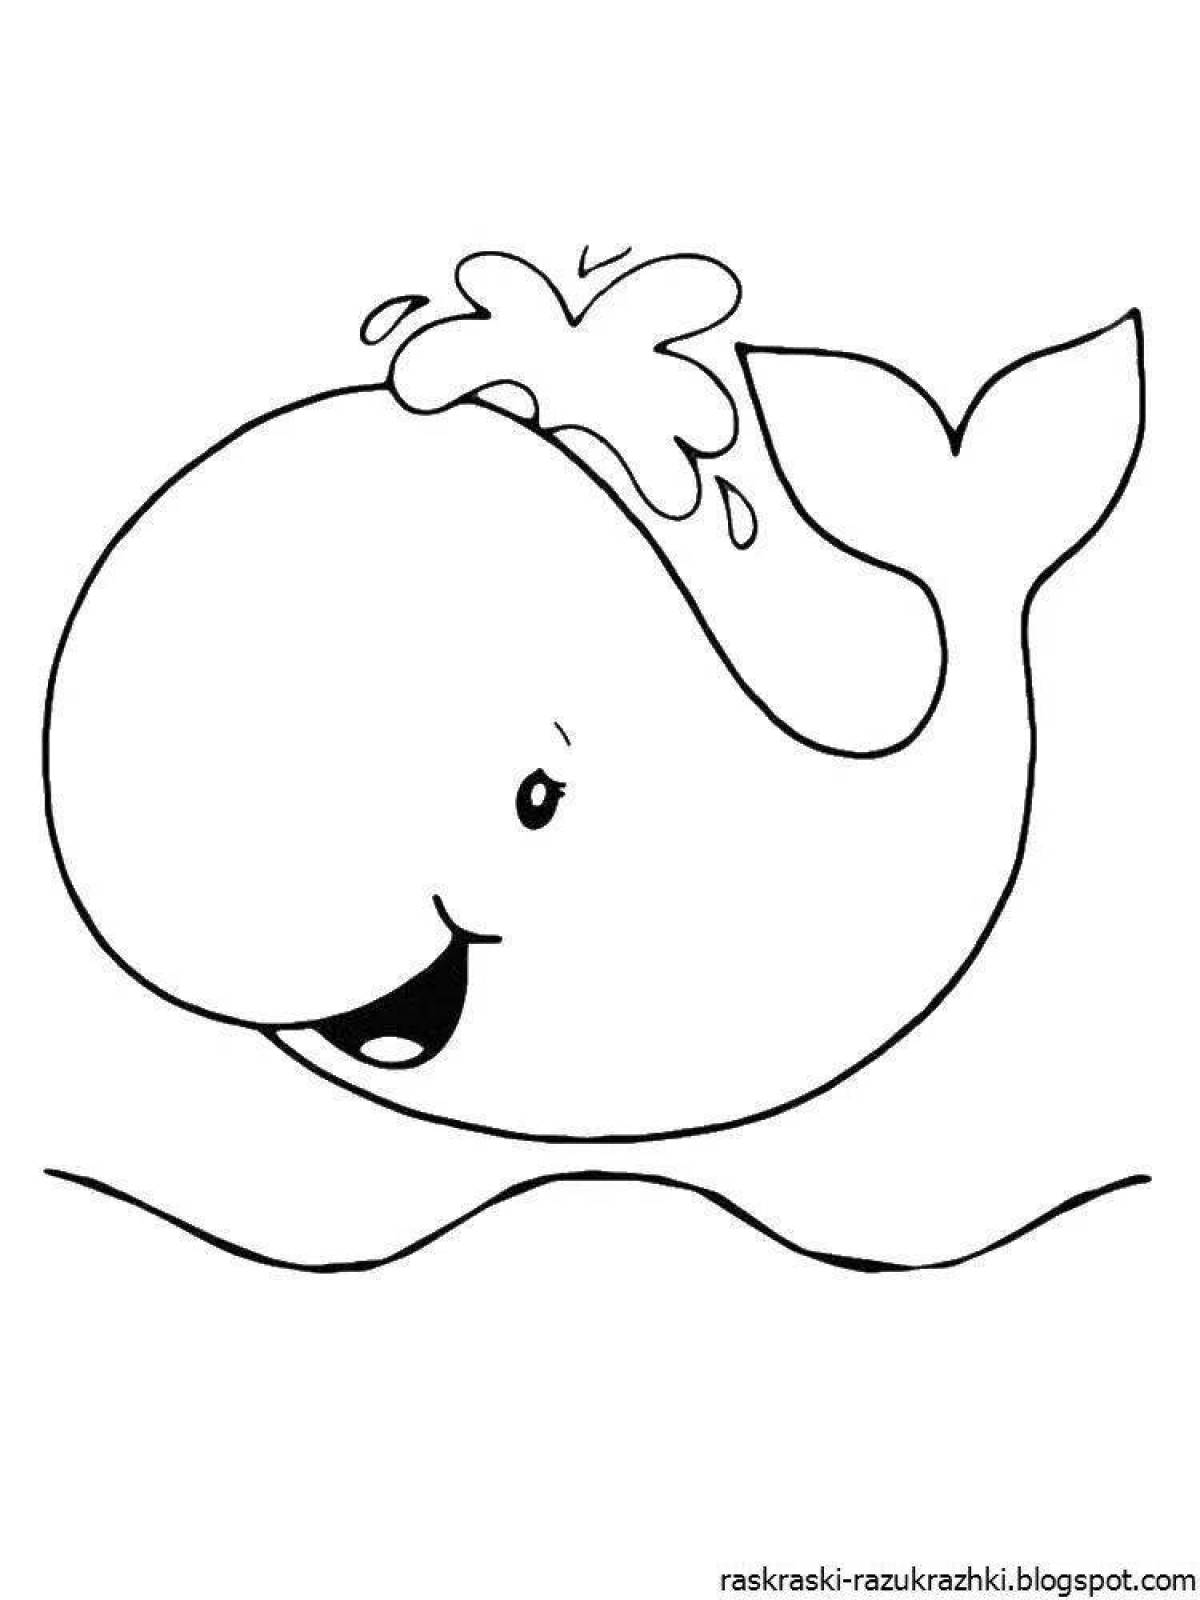 Раскраски морские животные для детей 3-4 лет